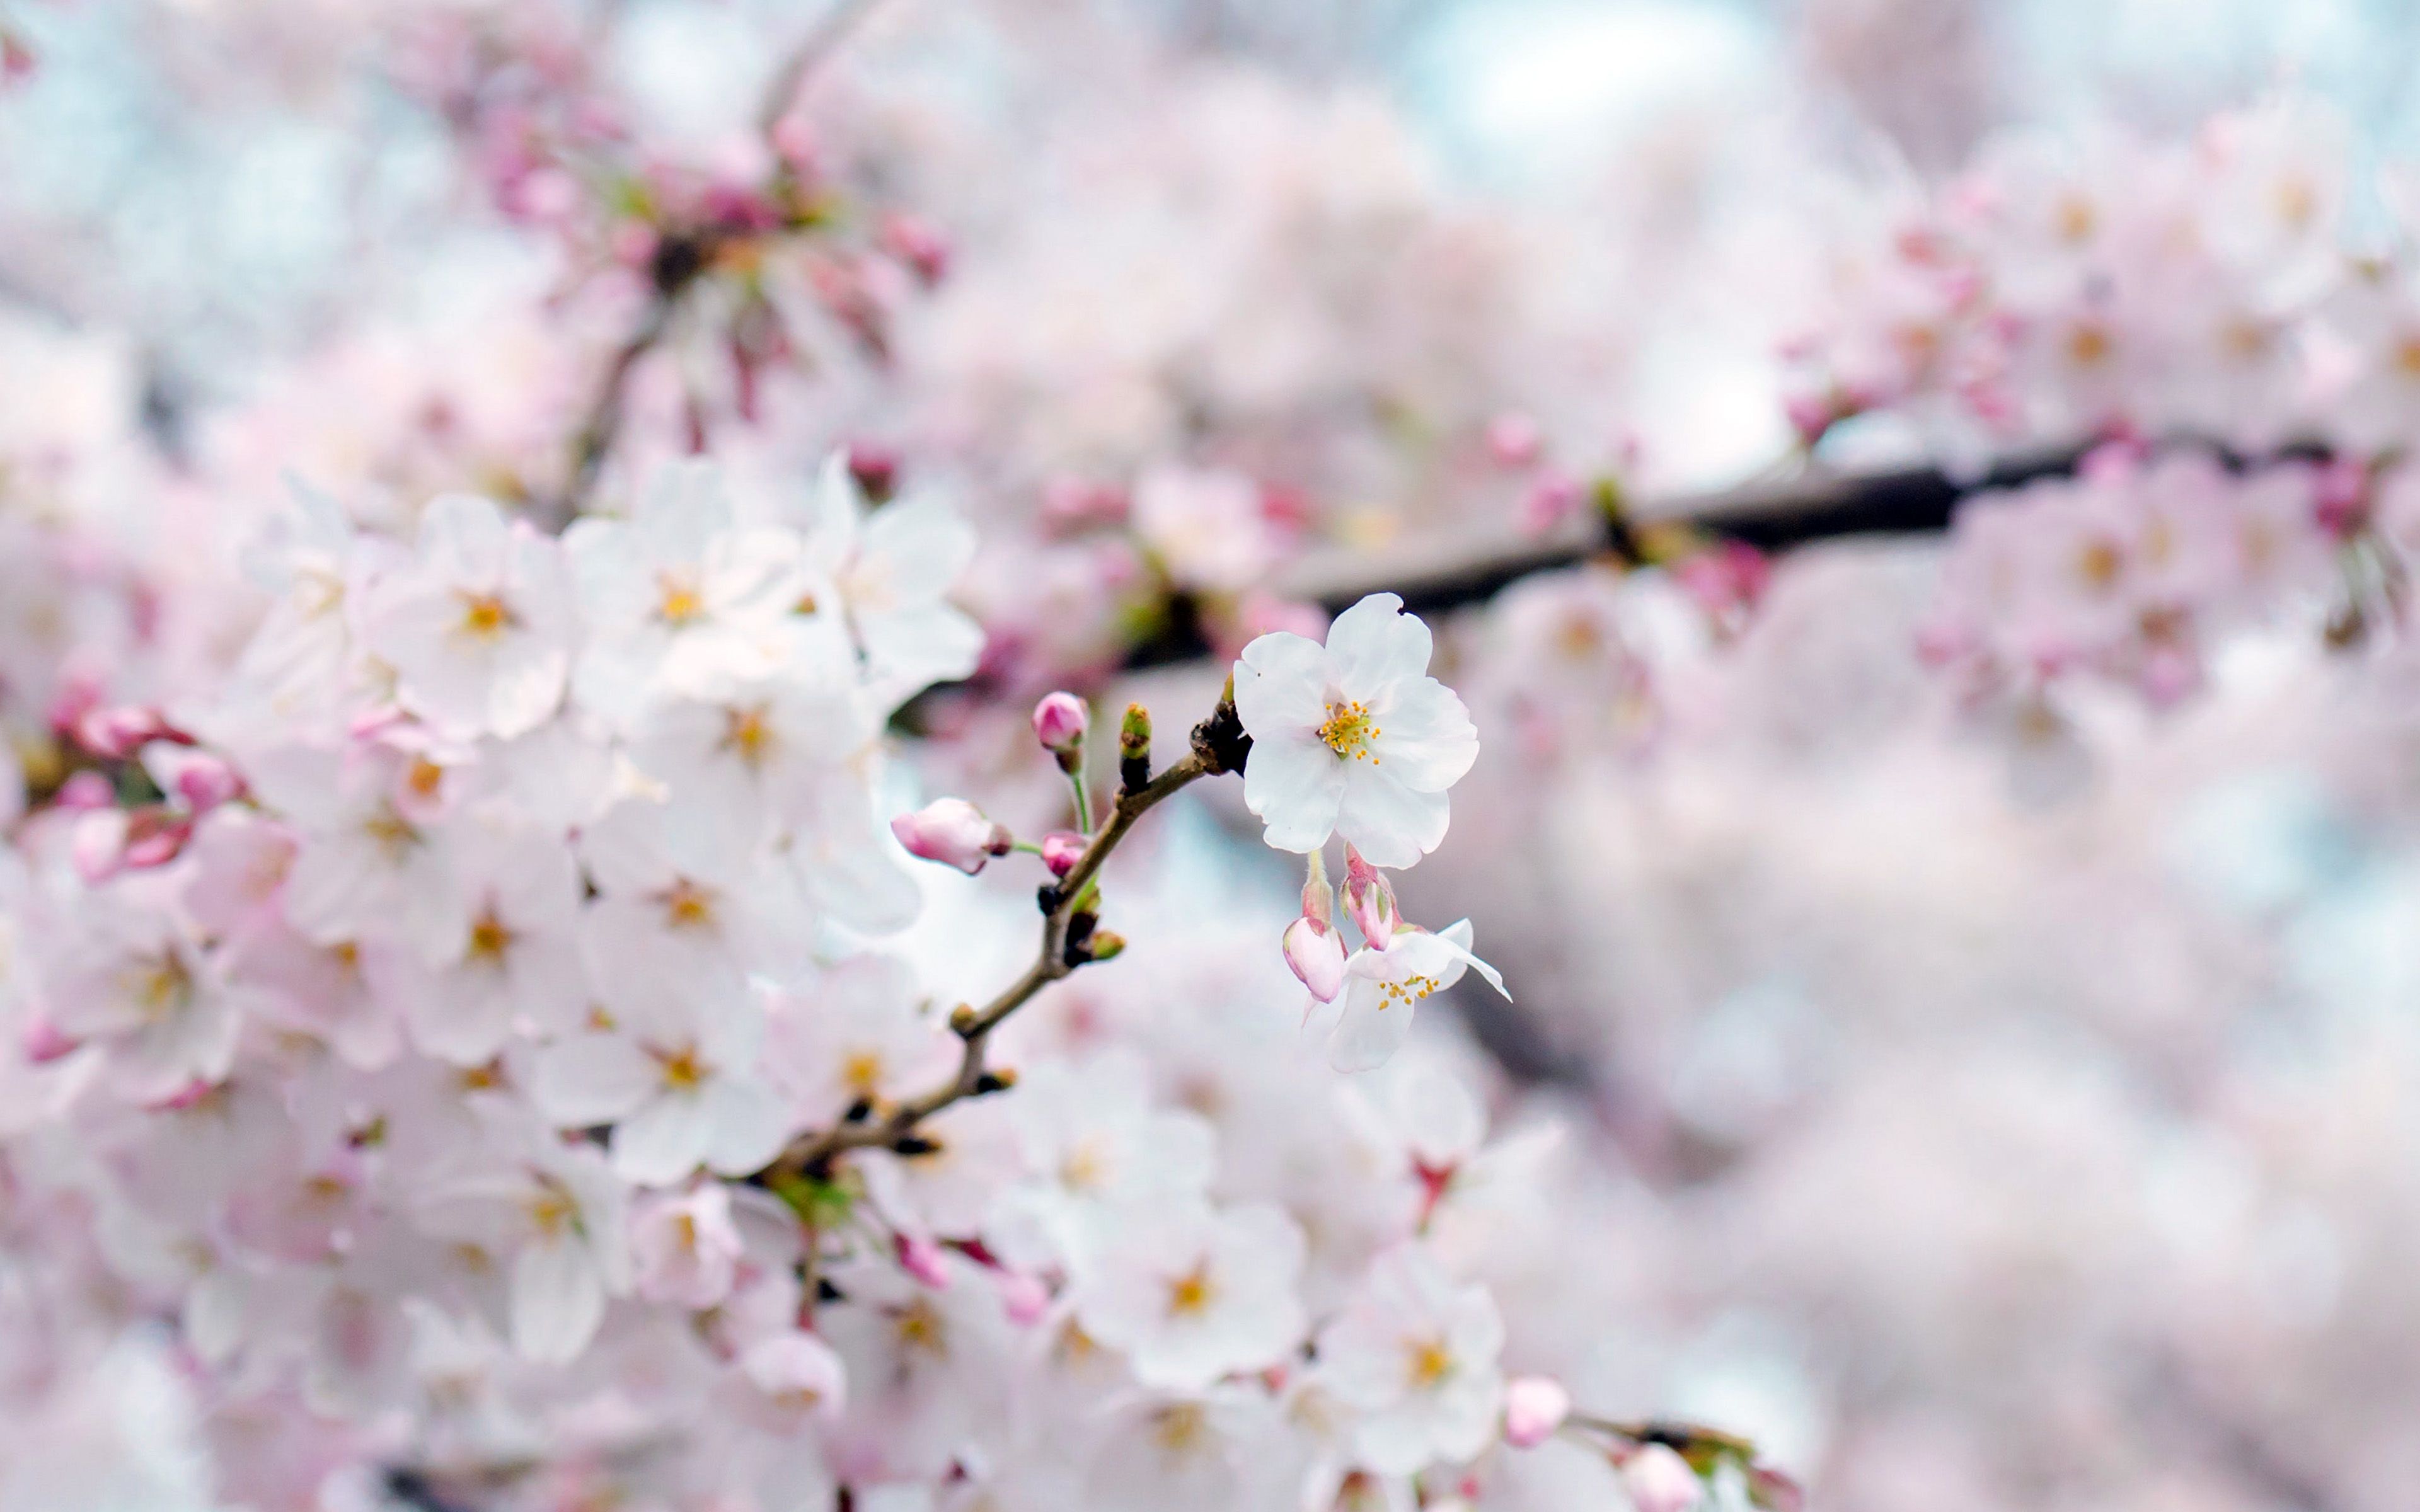 wallpaper for desktop, laptop. cherry blossom flower spring tree bokeh nature